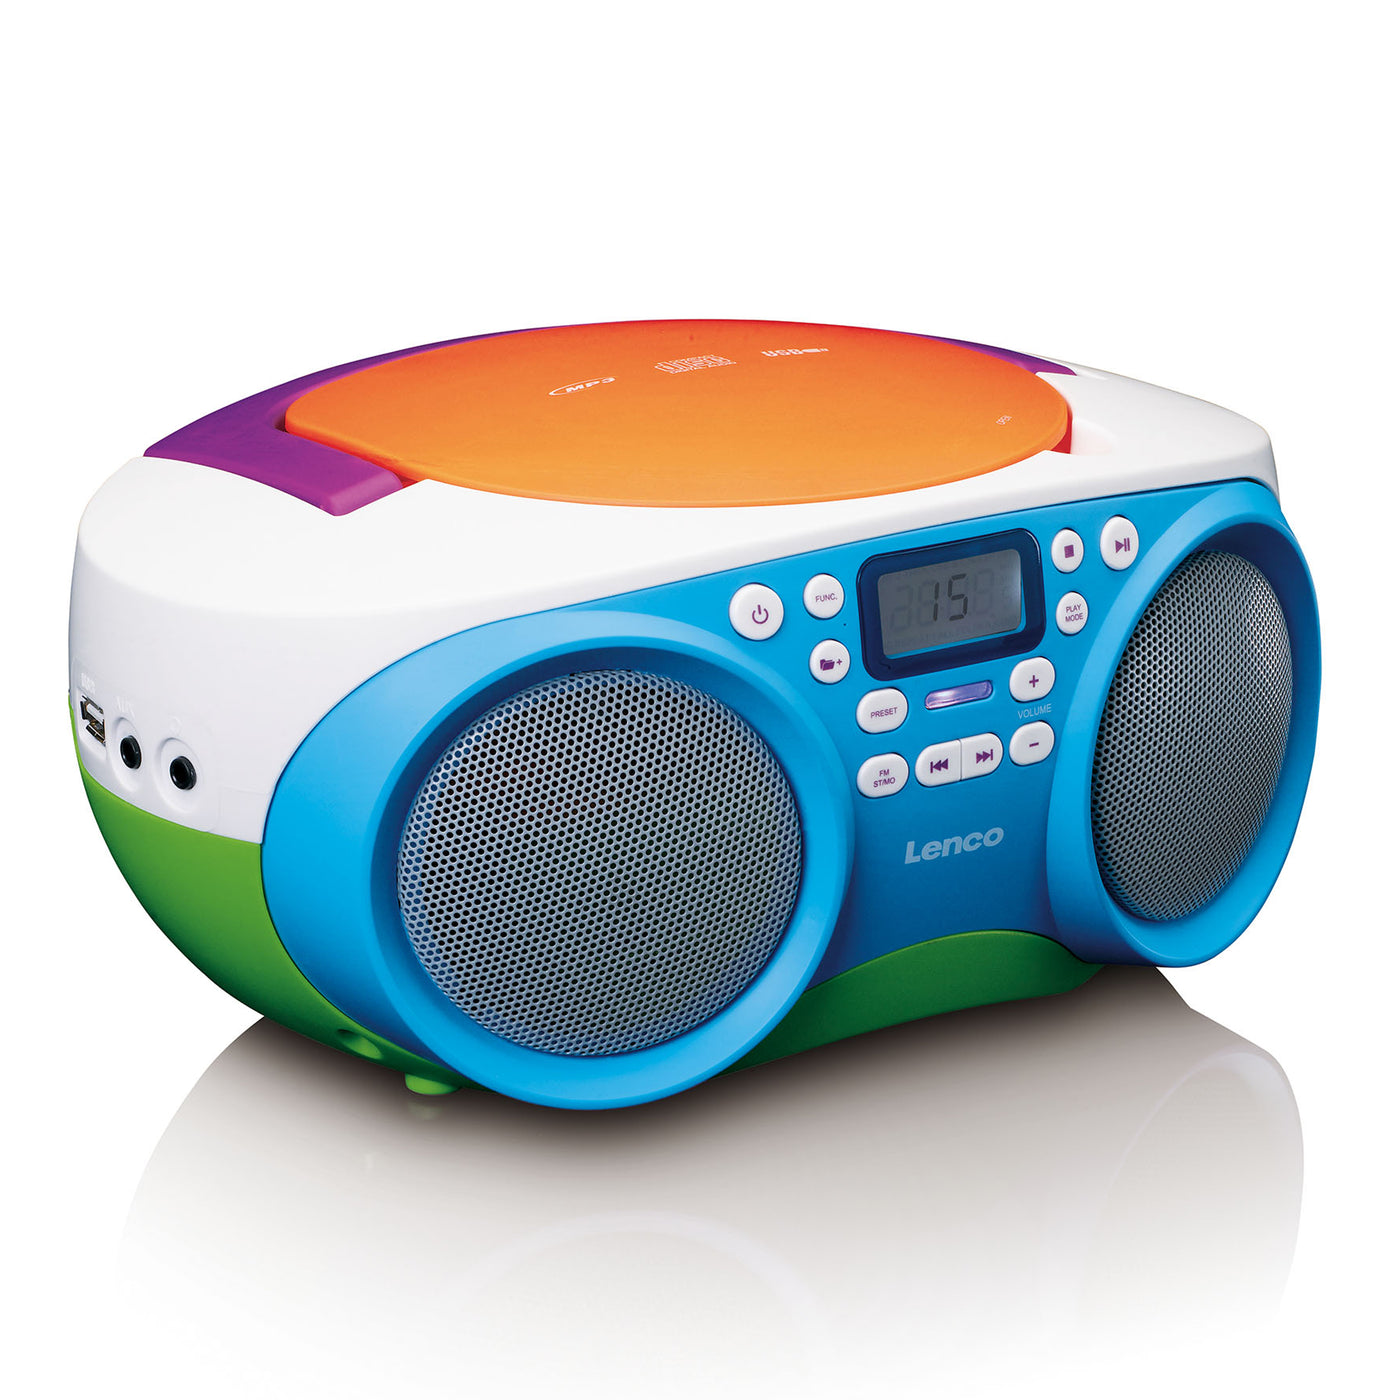 Lenco SCD-41 - Radio FM portable Lecteur CD/USB - Multicolore